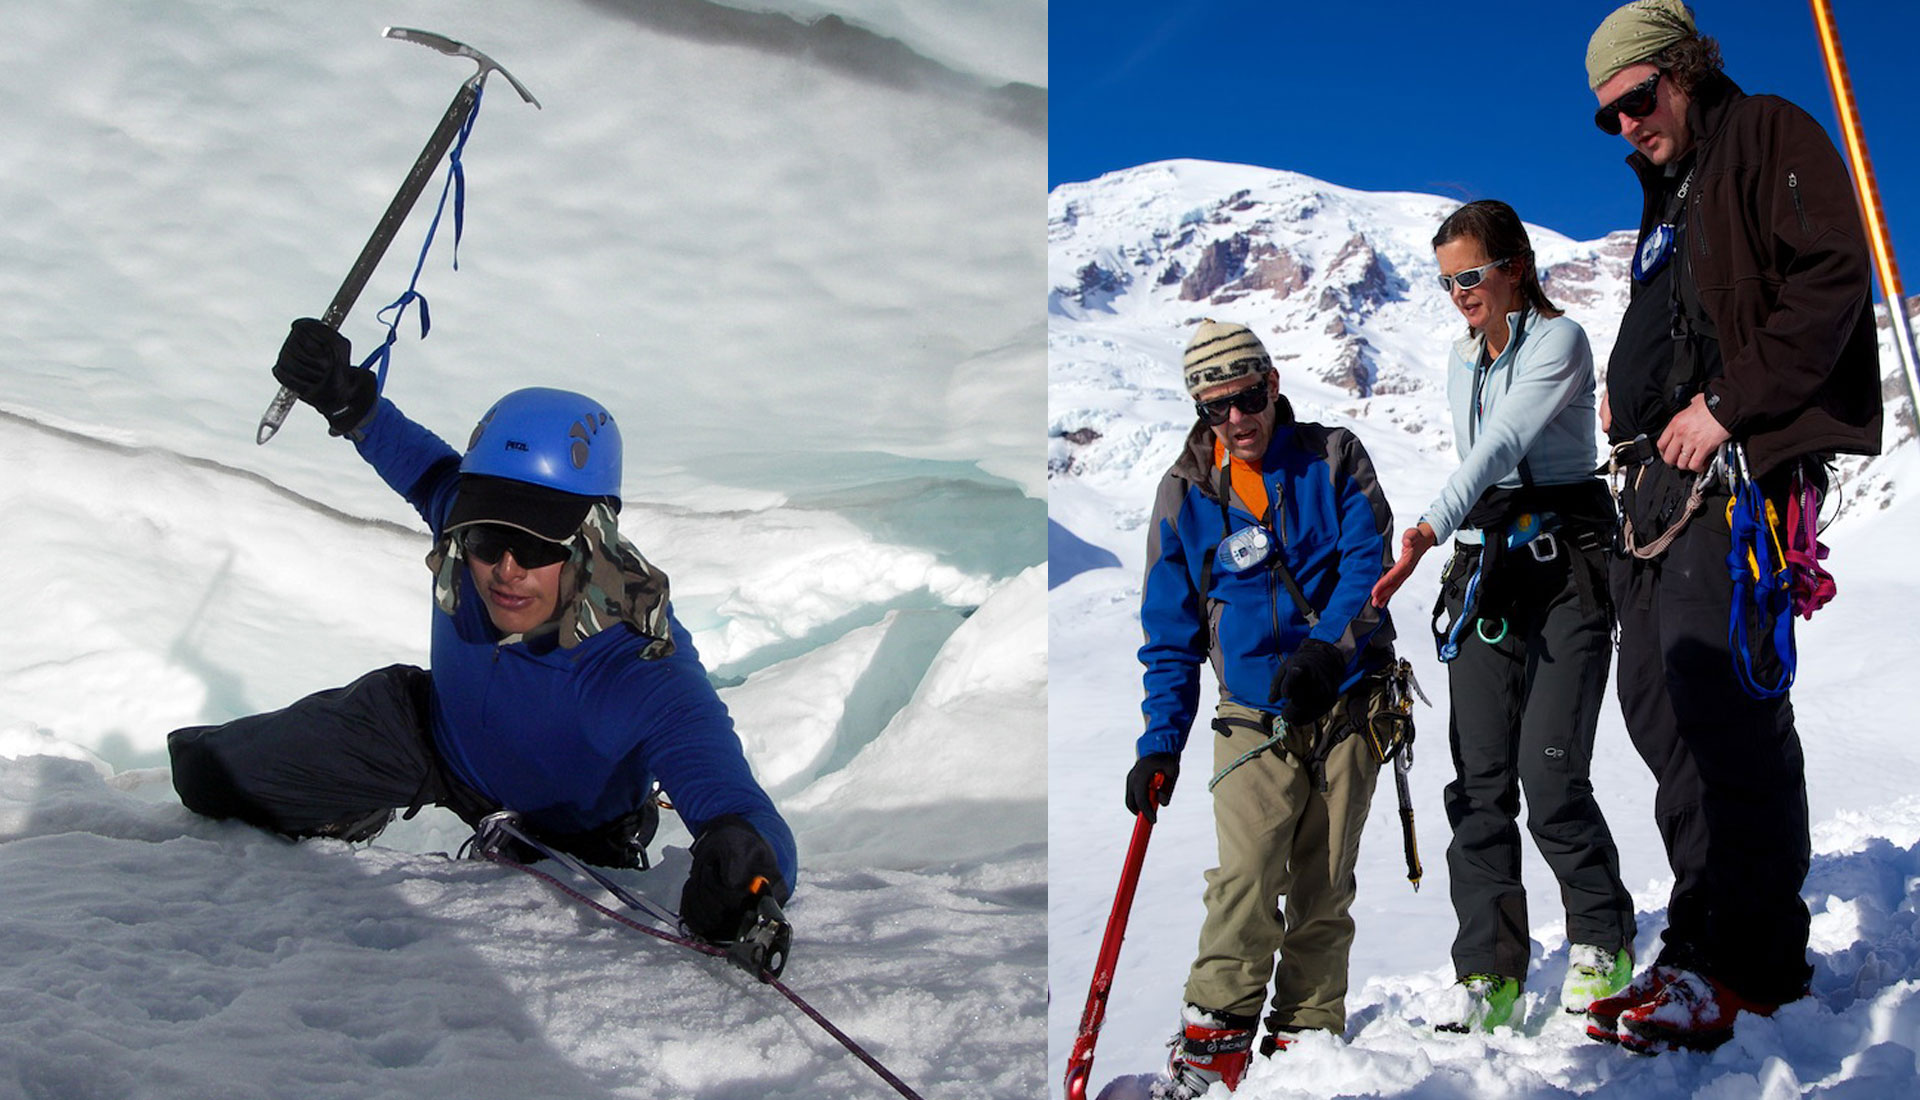 Seattle Glacier School - Learn Glacier Travel, Rescue, Ice Climbing Skills